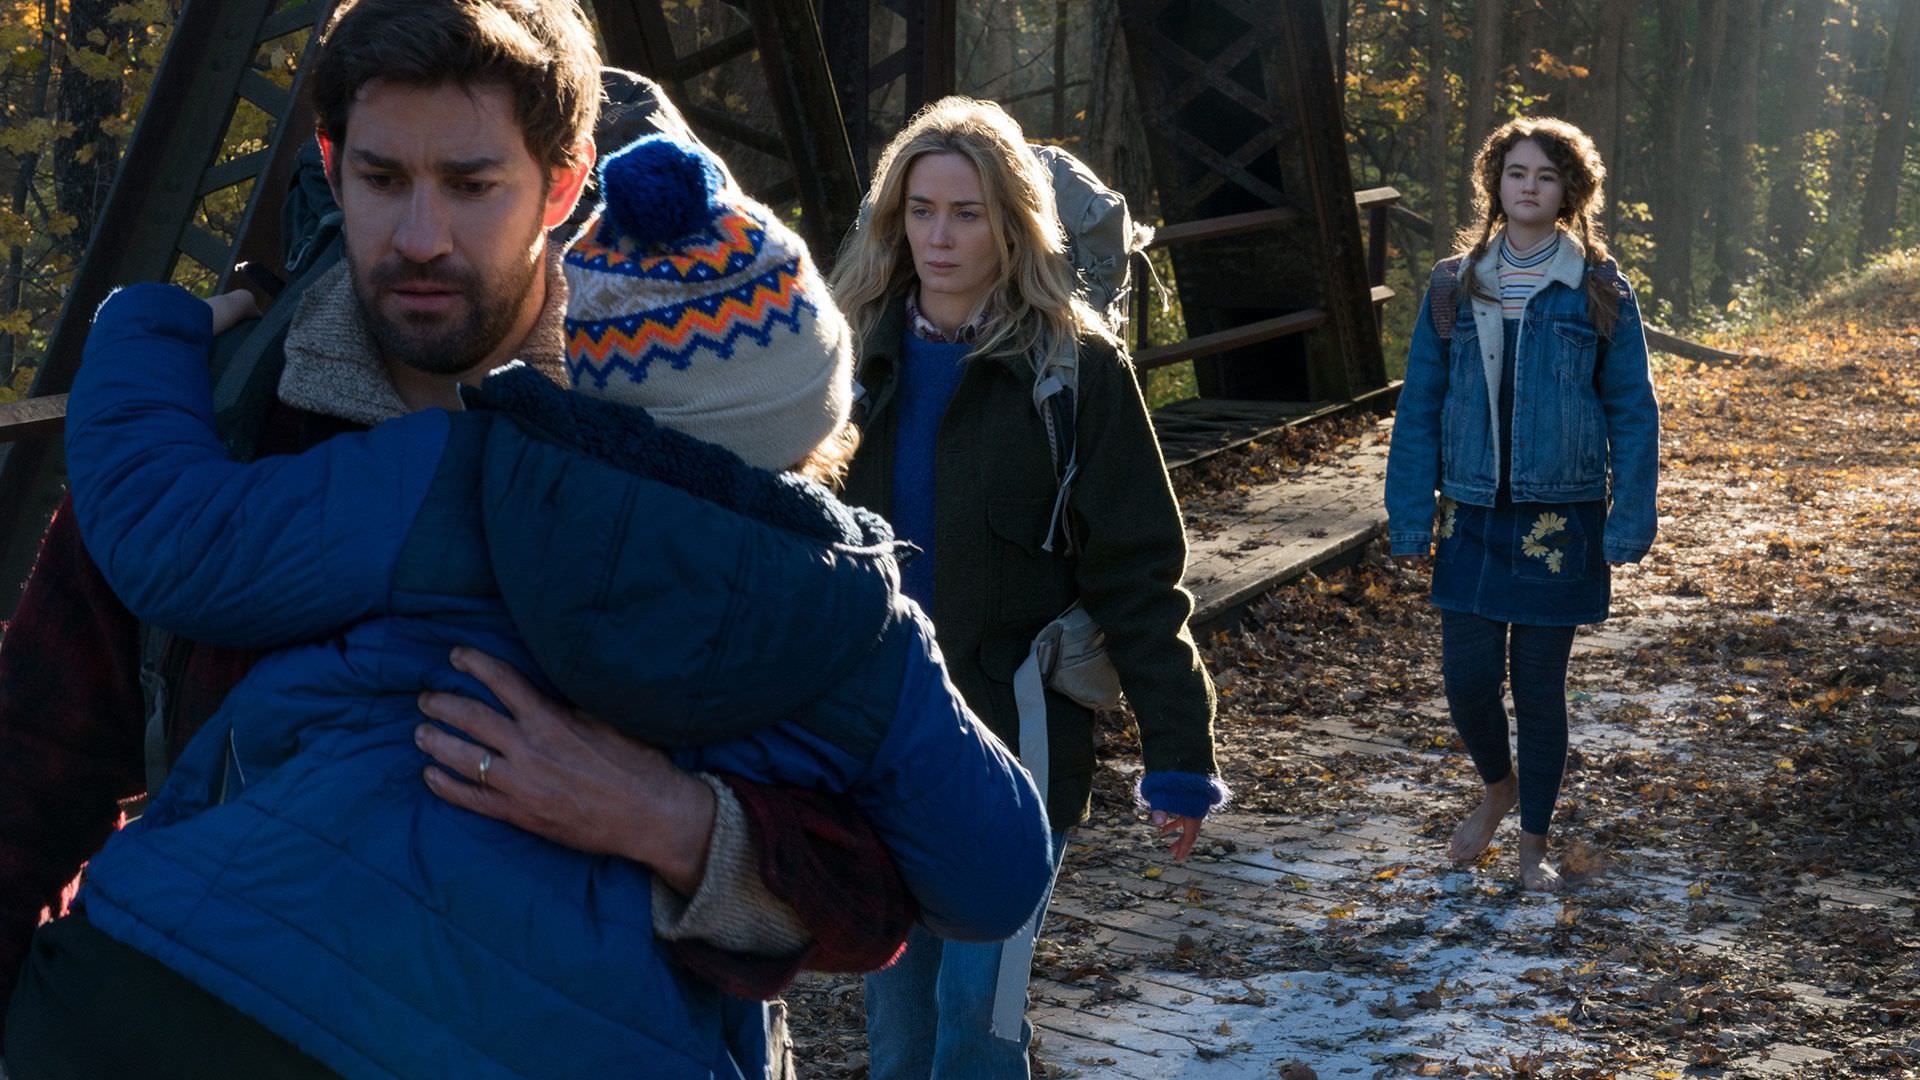 جان کرزایسنکی و امیلی بلانت در حال بردن فرزندان خود به پناهگاه در فیلم A Quiet Place